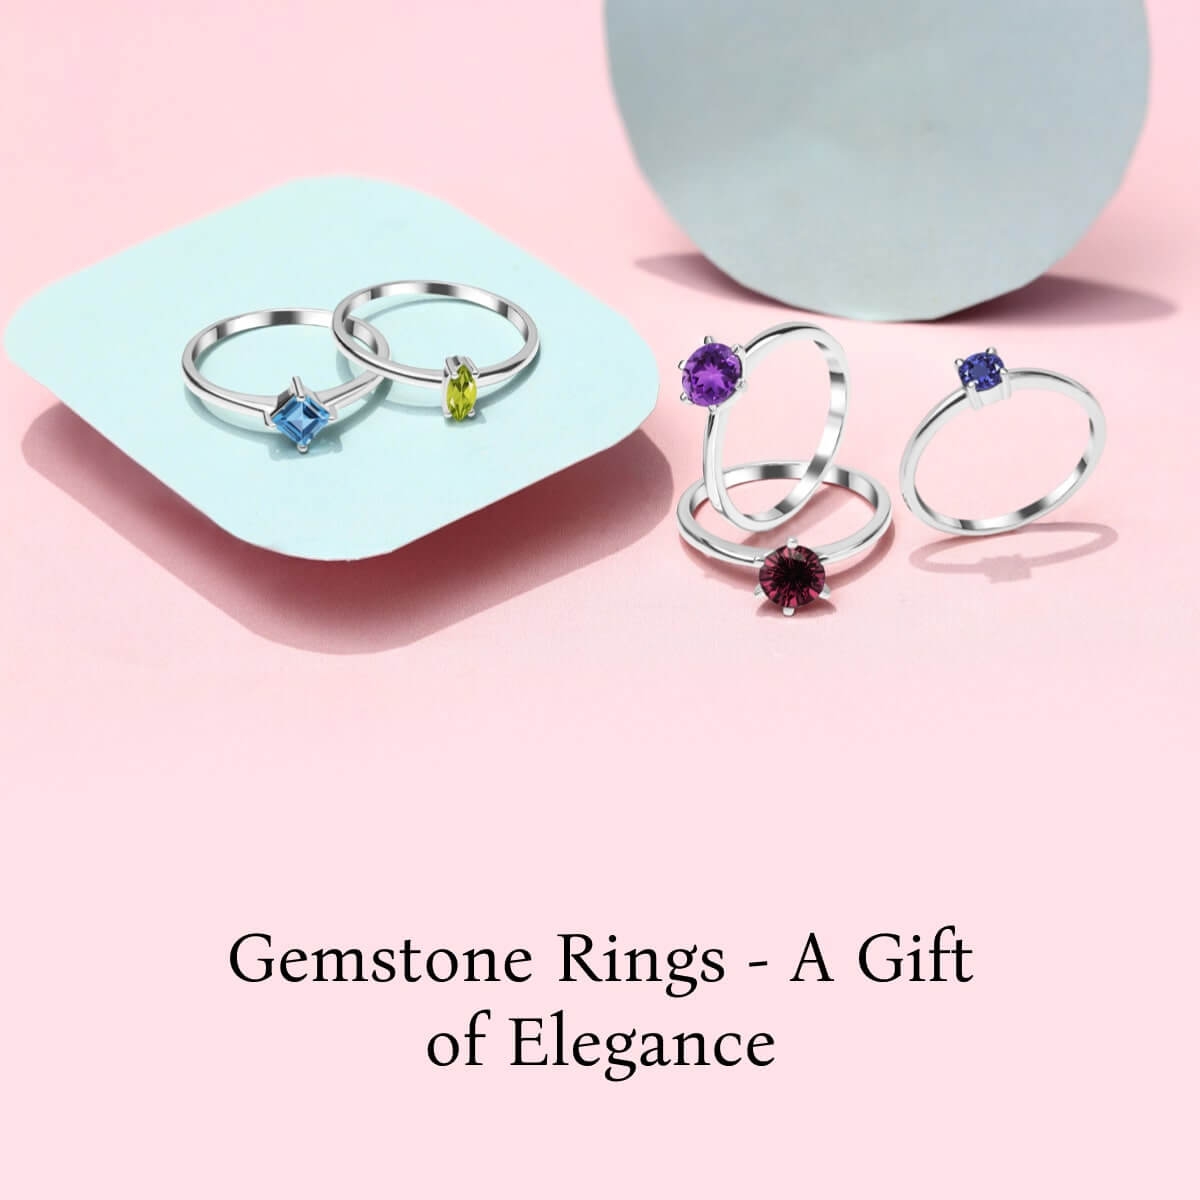 Benefits of choosing Gemstone Rings